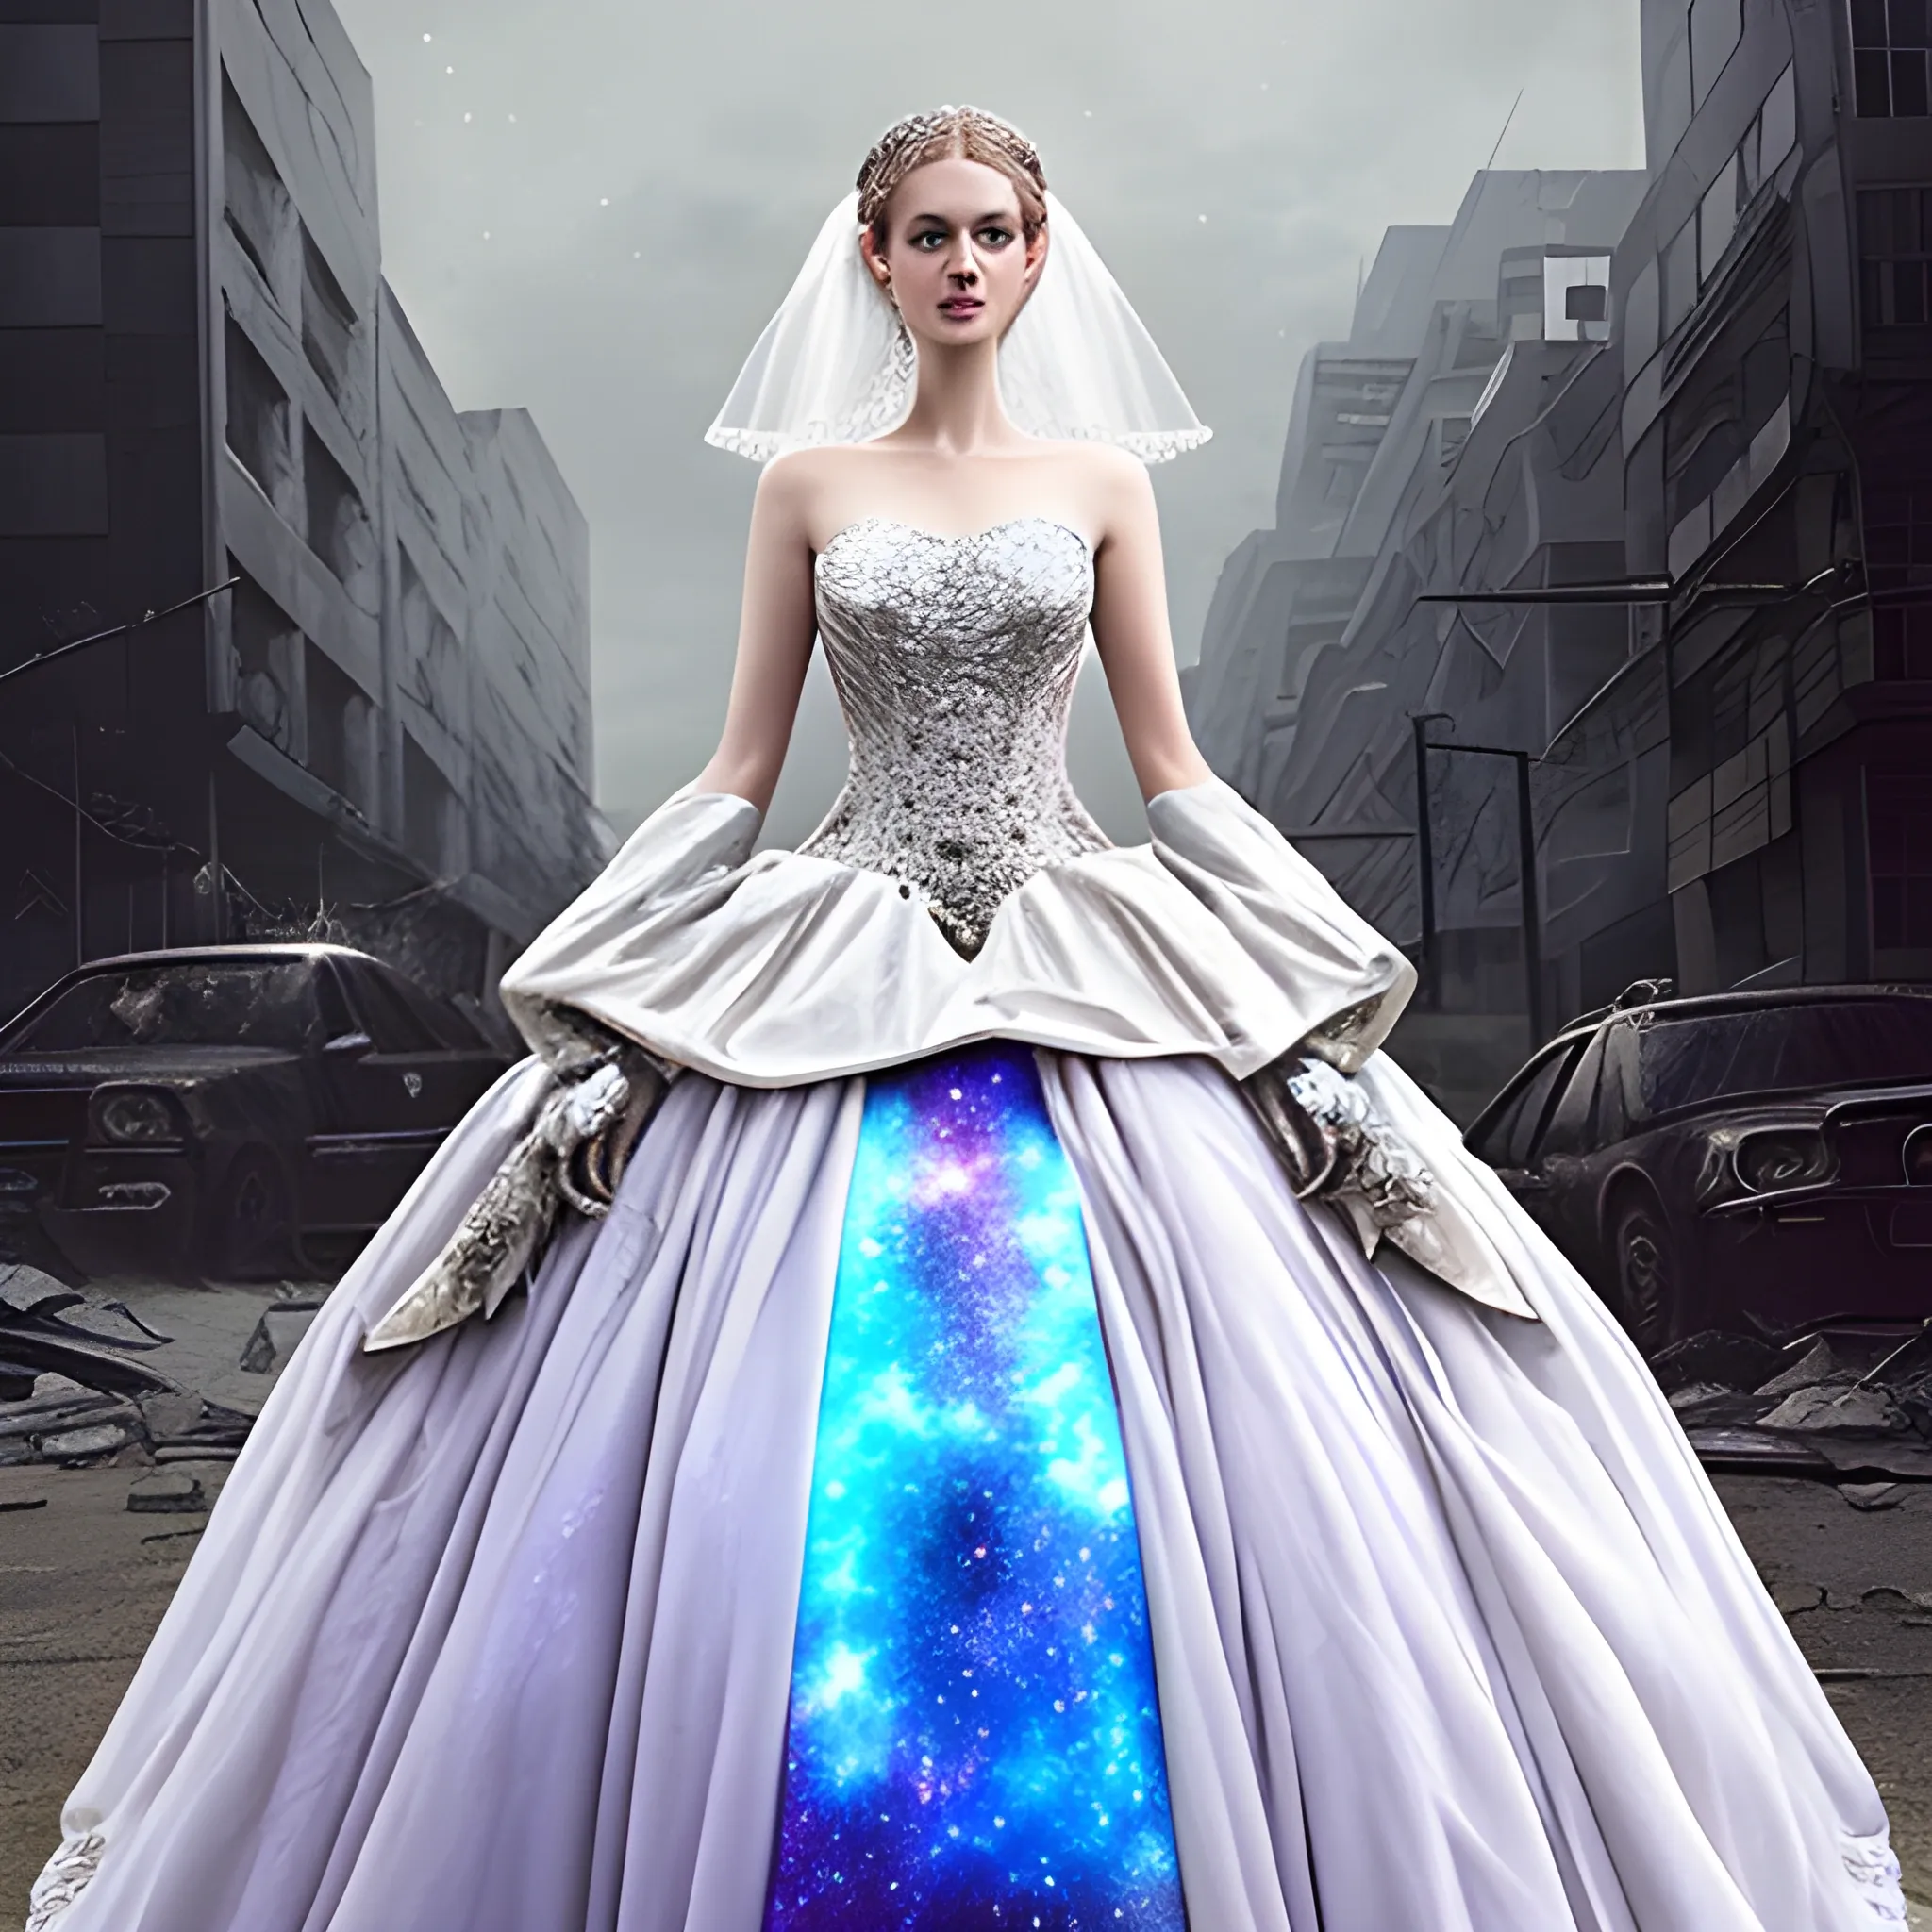 Urban apocalypse stardust Galaxy fantasy wedding dress